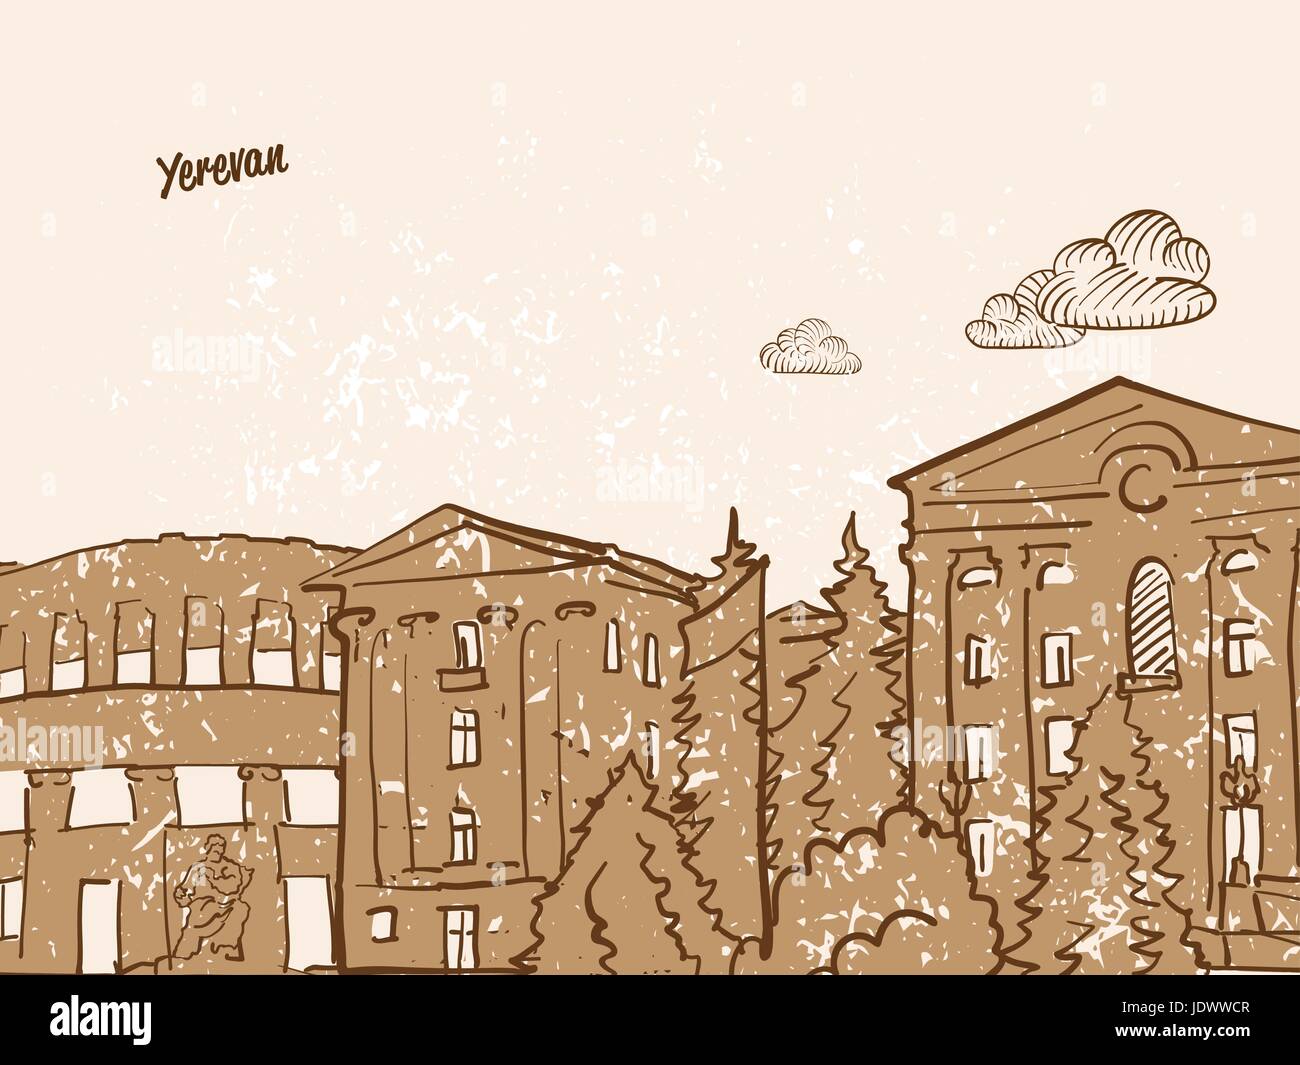 Yerevan, Armenien, Grußkarte, Hand gezeichnete Bild, berühmten europäischen Hauptstadt, Vintage-Stil, Vektor-Illustration Stock Vektor